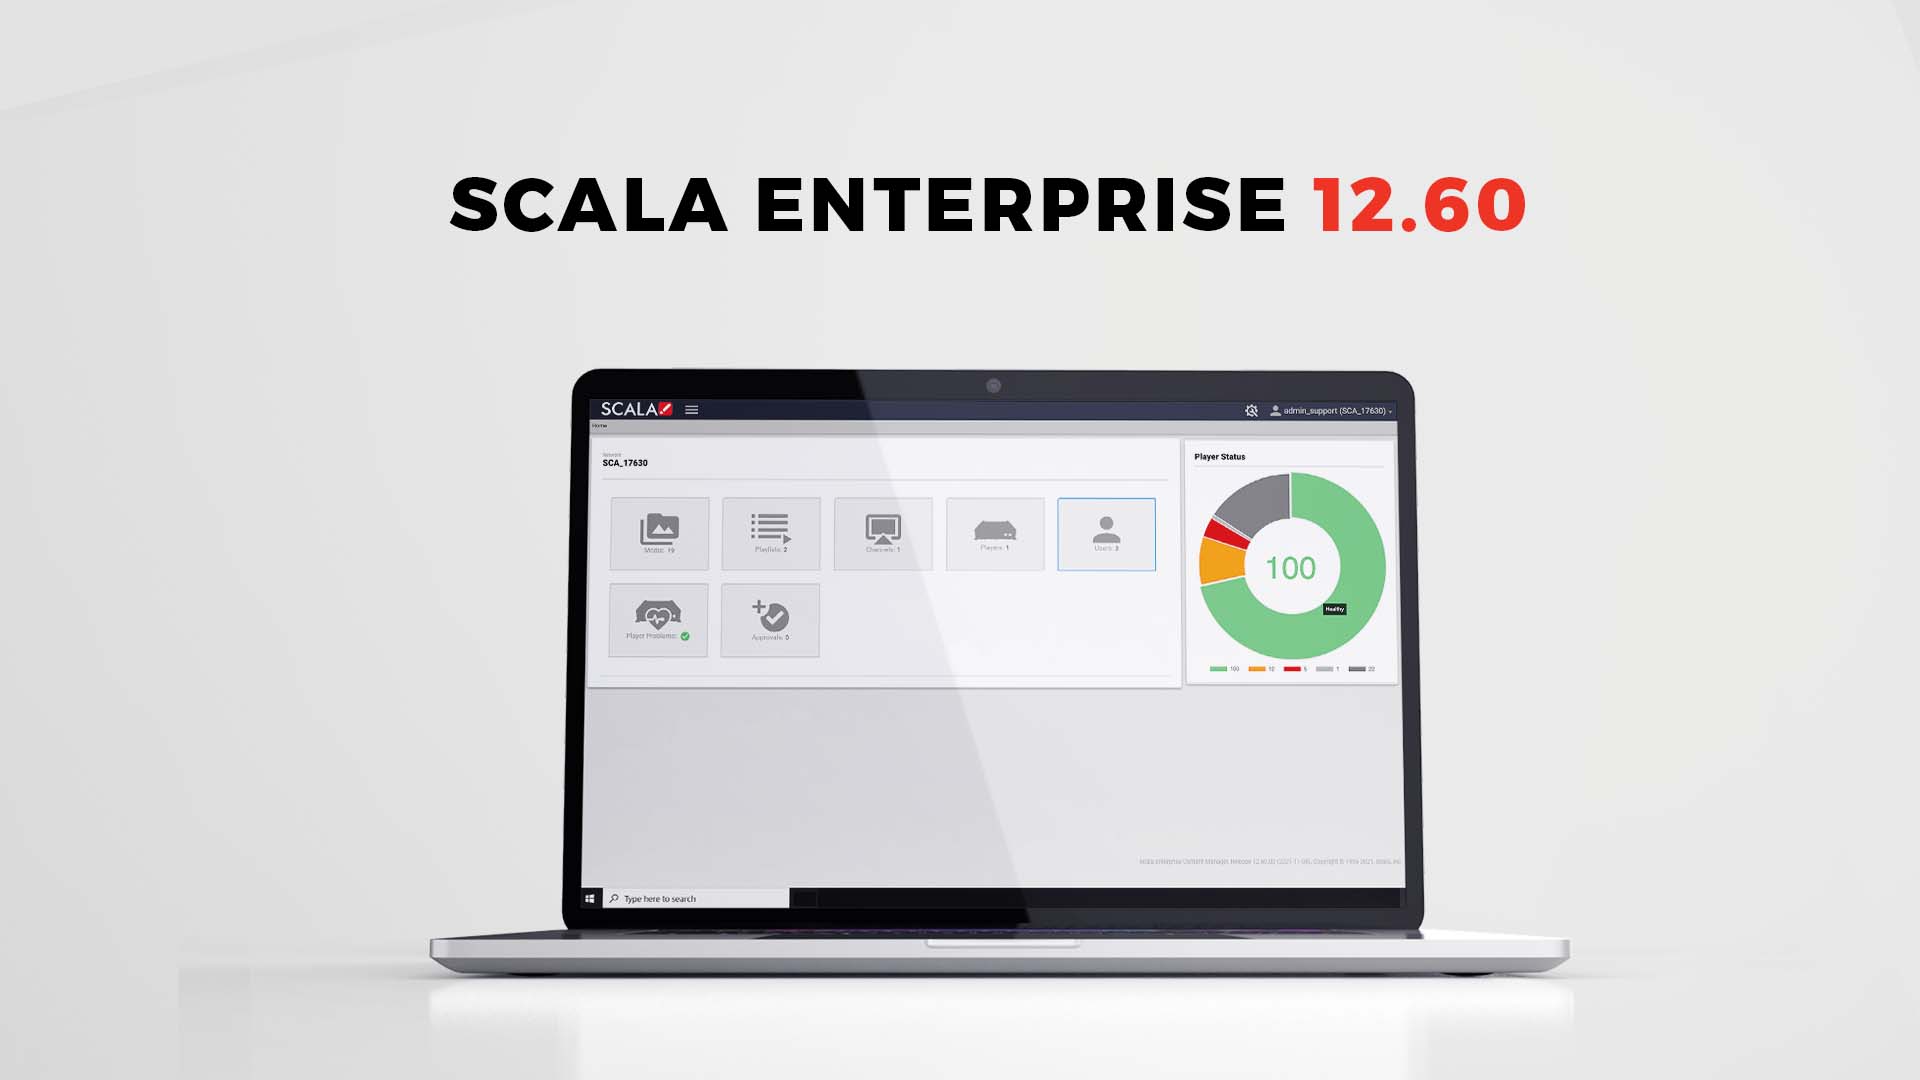 Scala Enterprise 12.60